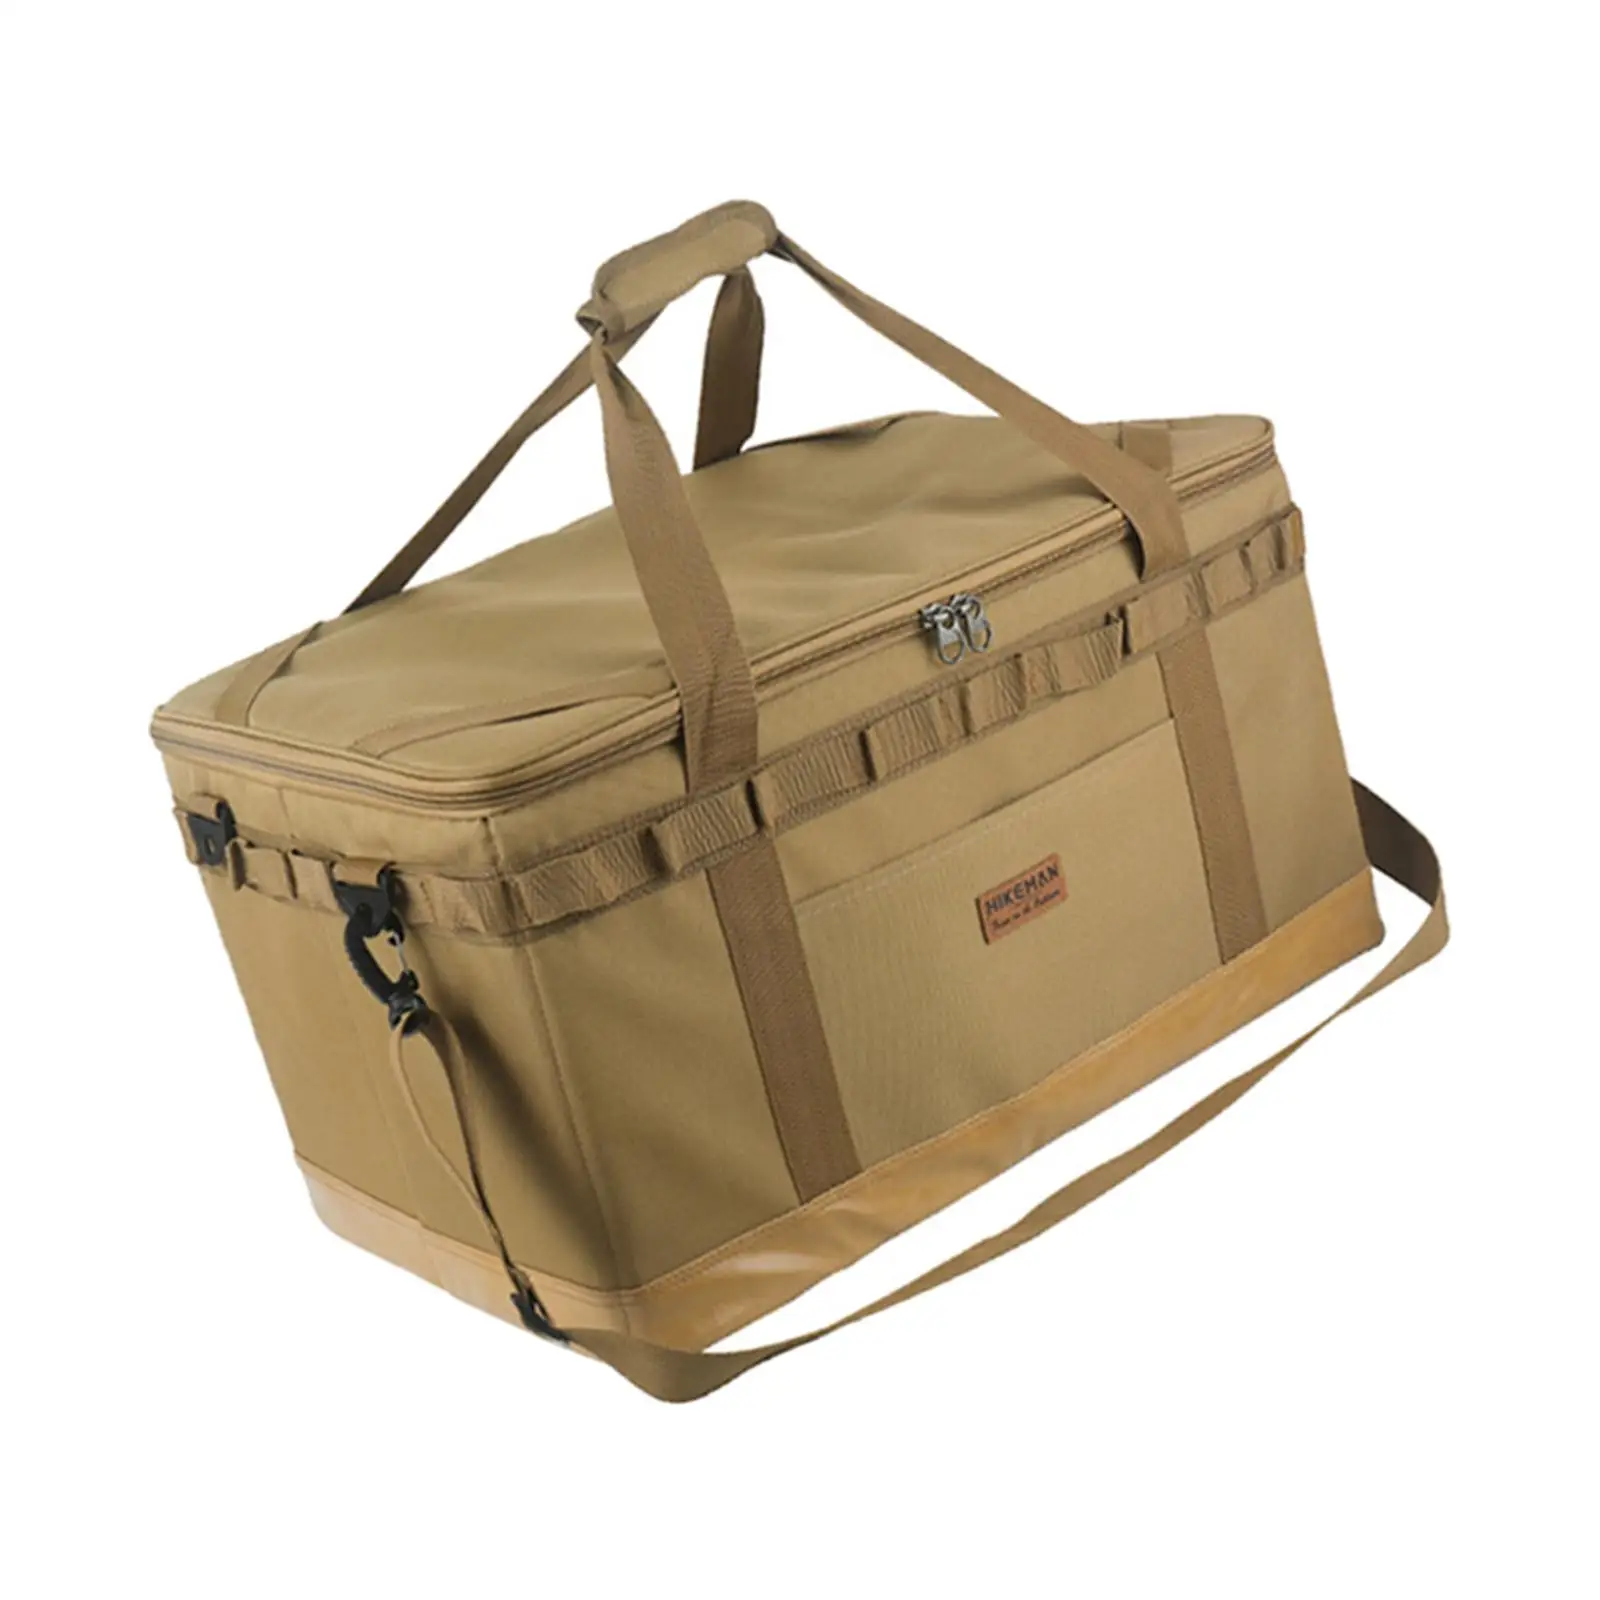 57L Outdoor Camping gear pouch Heavy Duty Package Waterproof Duffel Bag Hard Storage Box